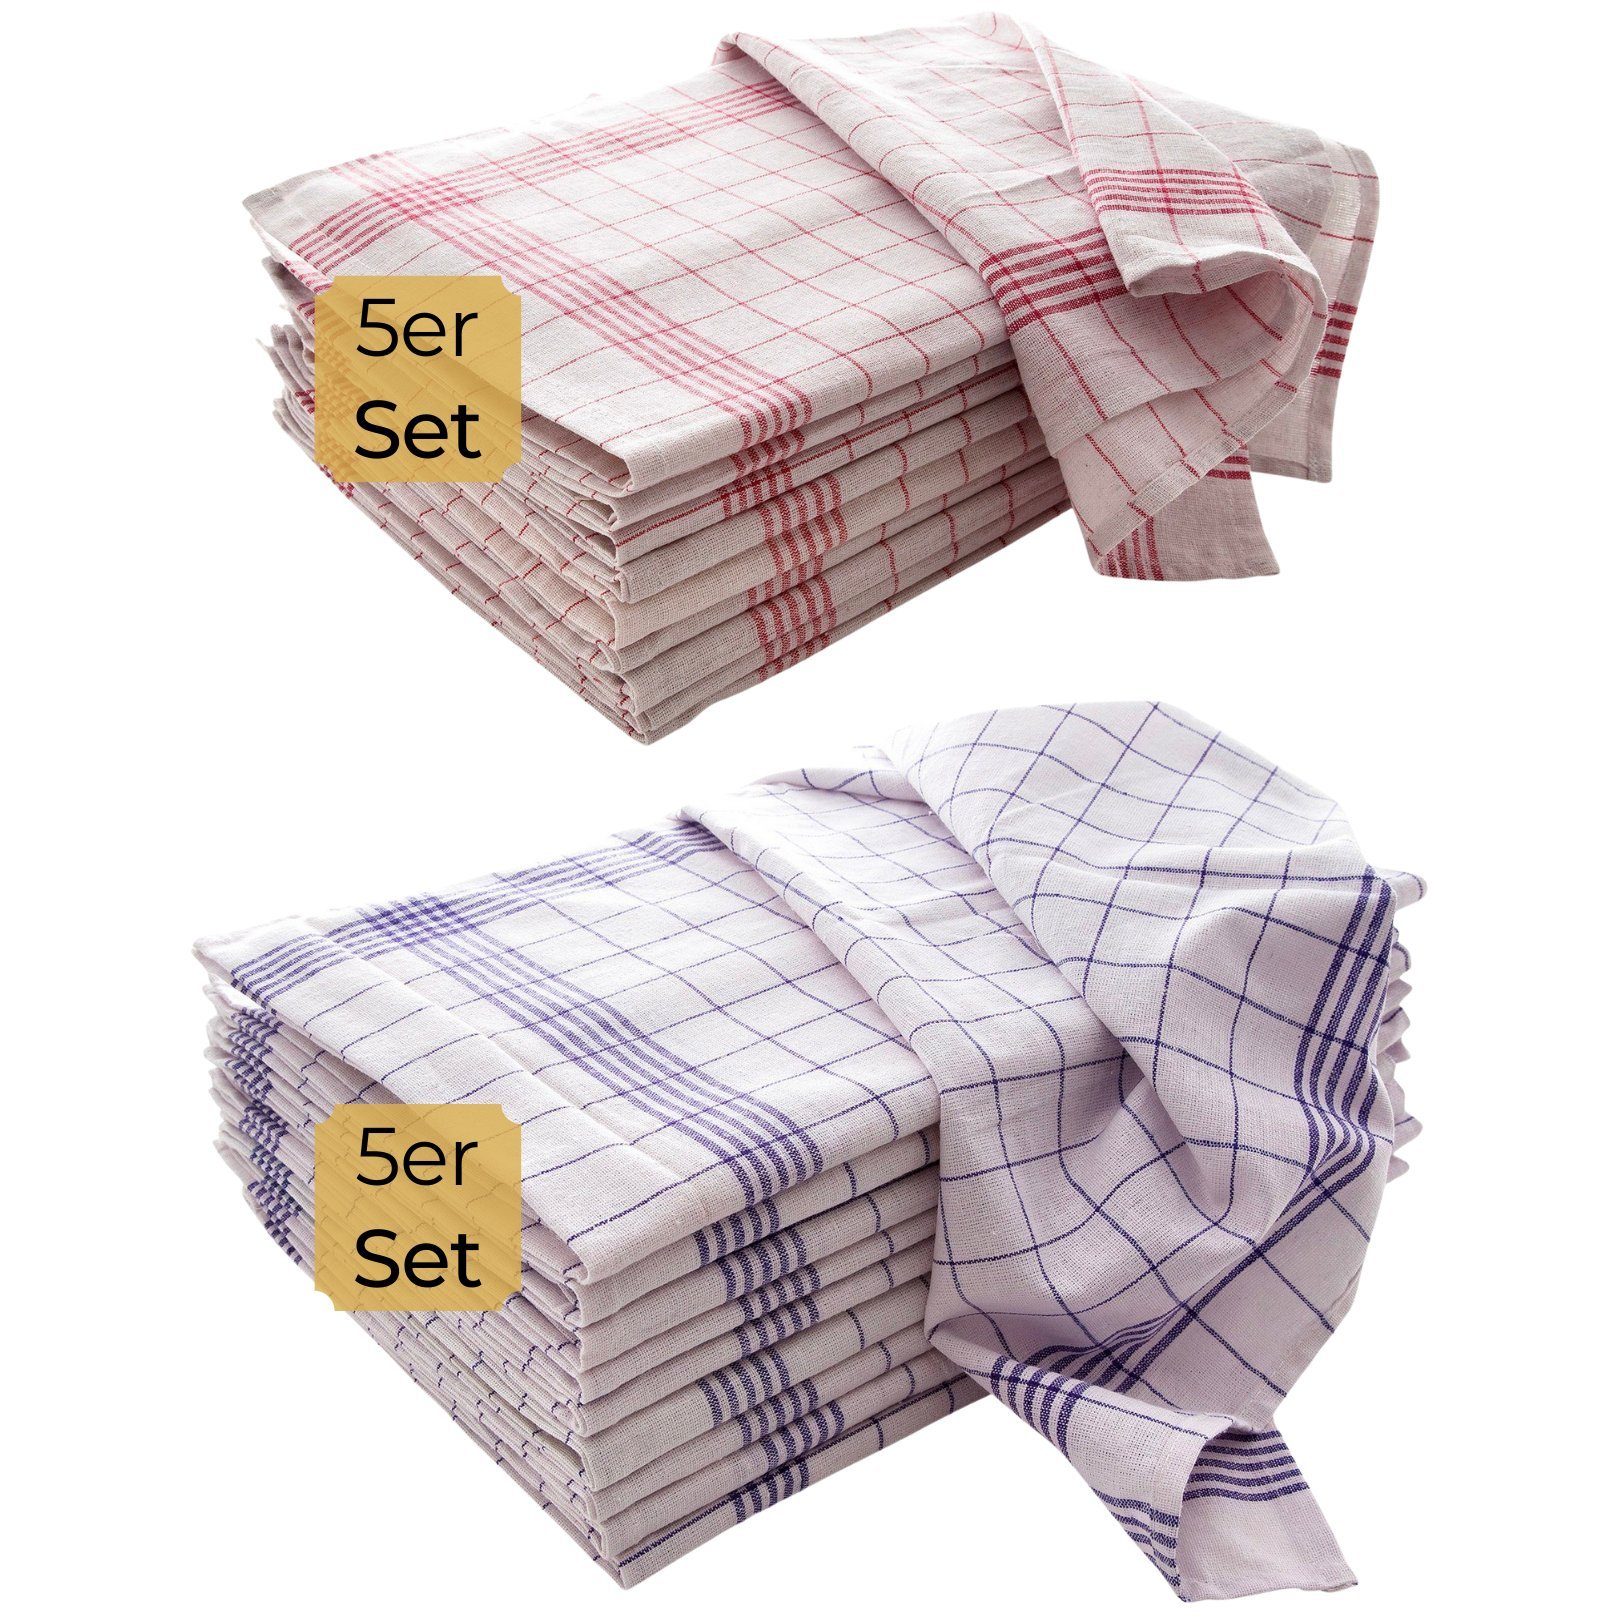 Hometex Premium Textiles Geschirrtuch Trockentuch, Allzweck-Tücher kariert 50x70 cm aus 100% Baumwolle, Premium-Qualität - Vielfältig einsetzbares 10er Set Blau/Rot-Weiß